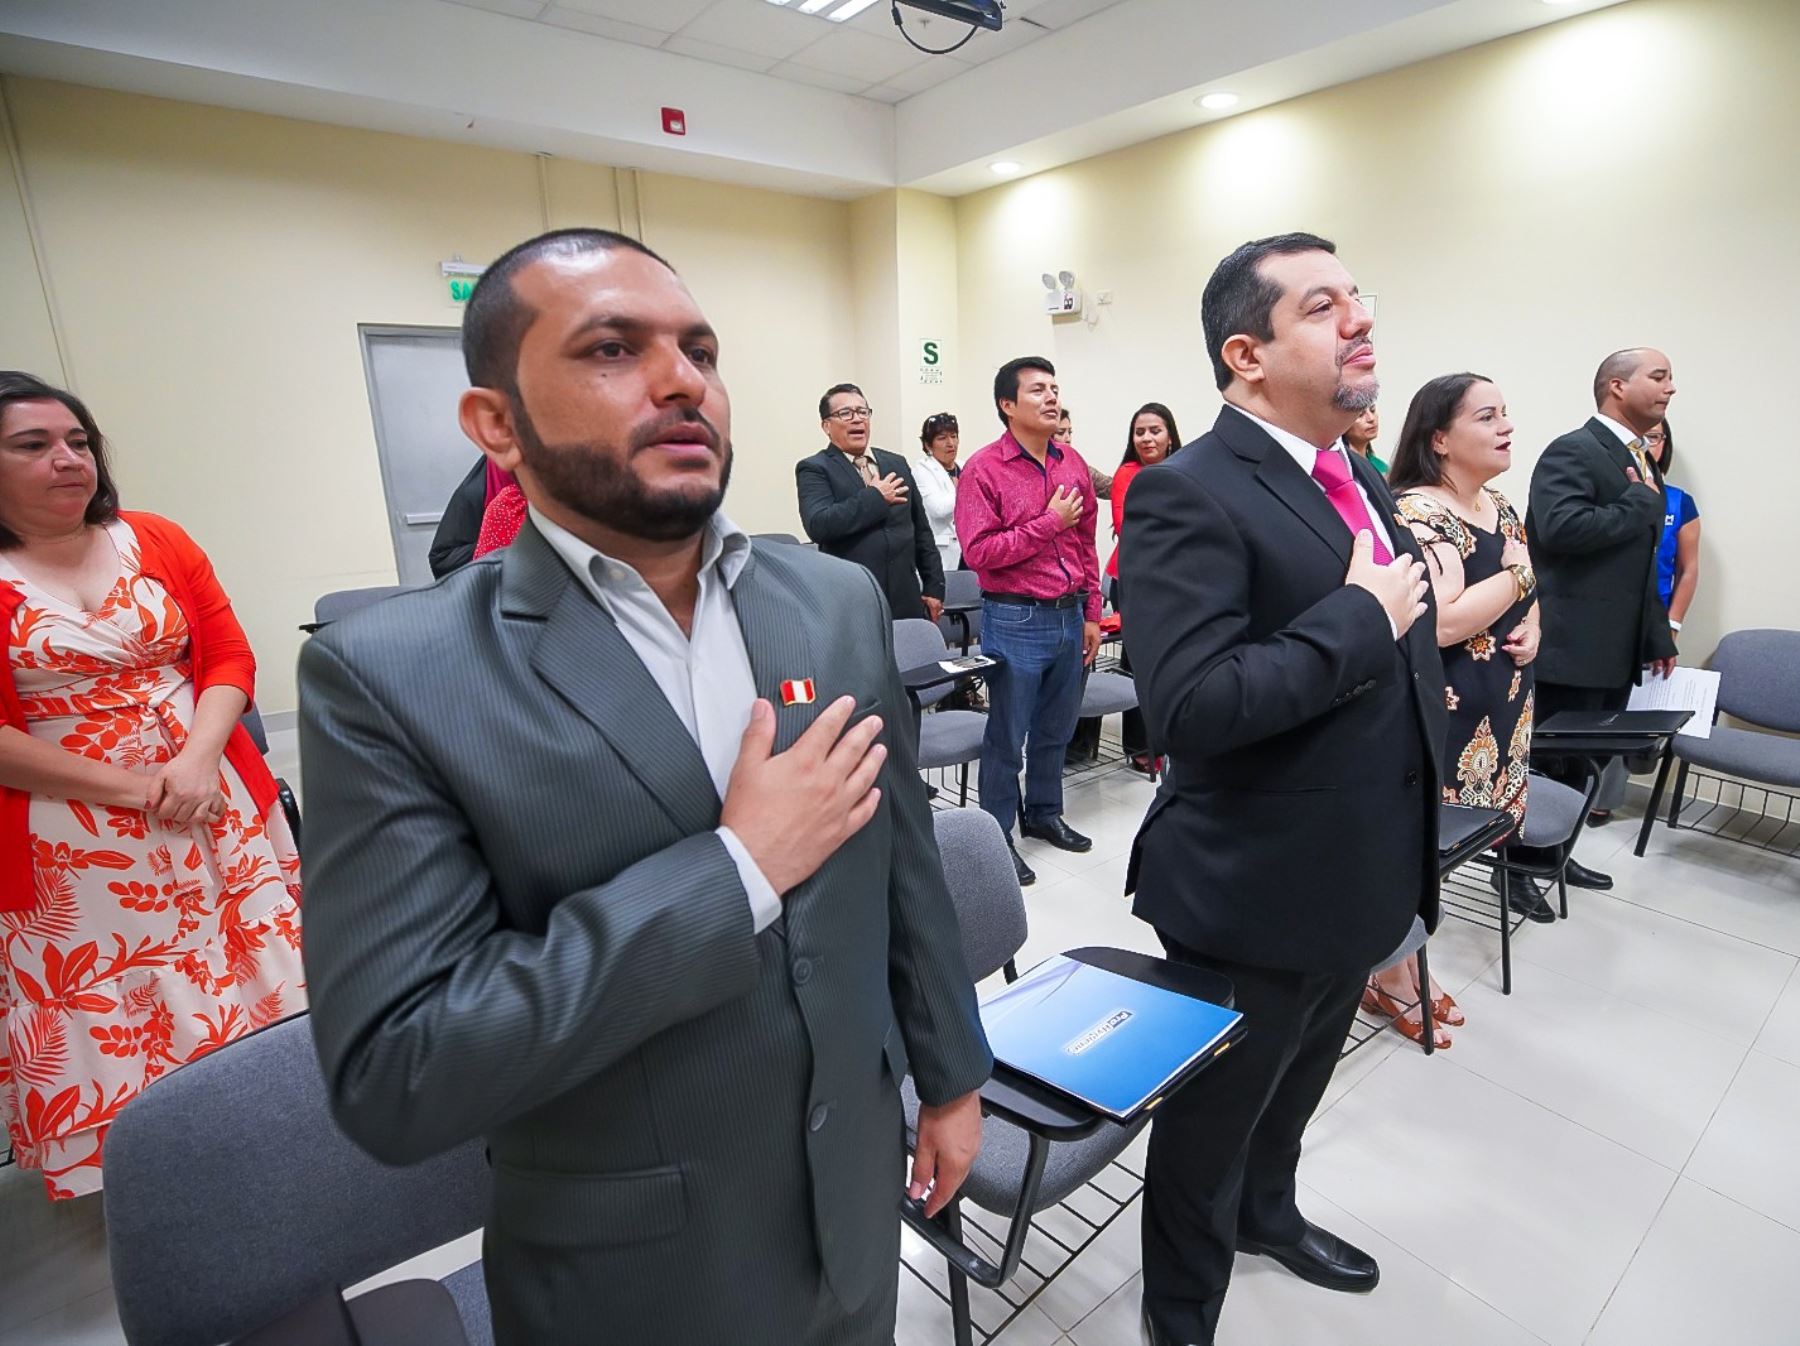 Cinco ciudadanos extranjeros se convirtieron en peruanos tras recibir el título que los reconoce como tal por la Superintendencia de Migraciones. La ceremonia se celebró en Piura. ANDINA/Difusión